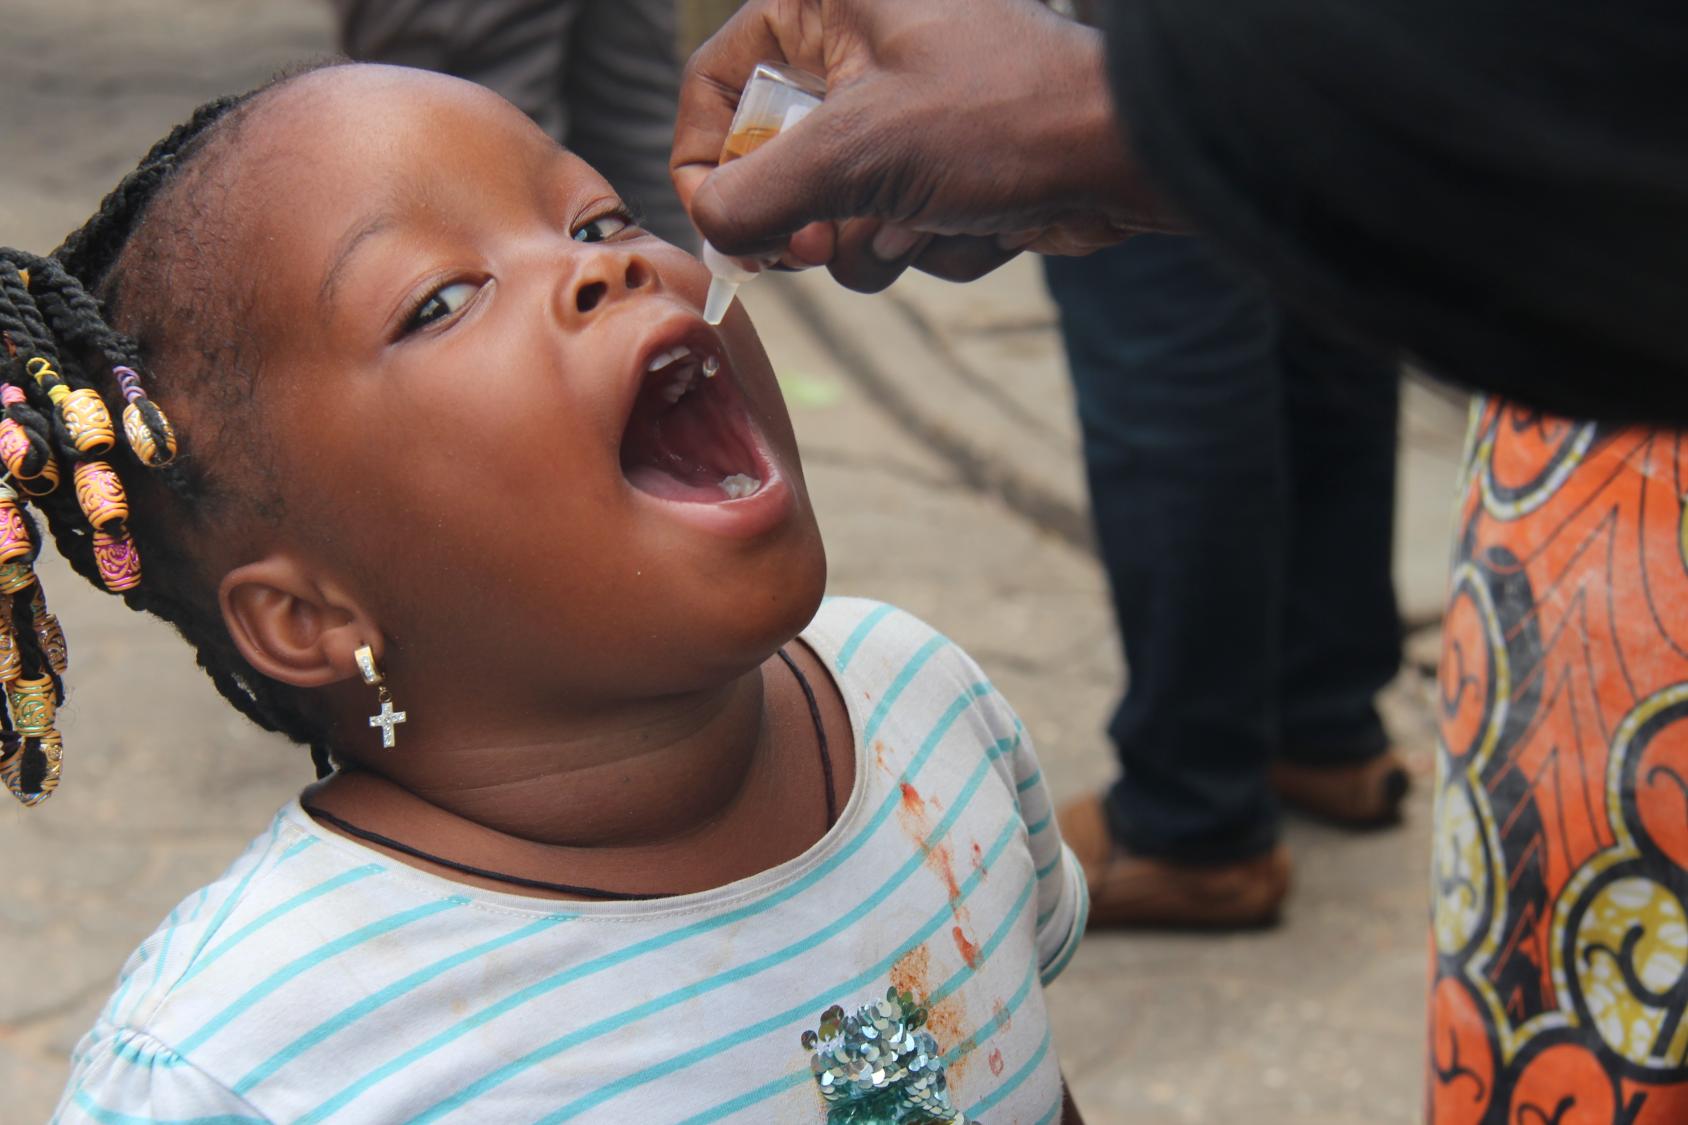 Une petite fille béninoise coiffée avec des tresses ouvre la bouche tandis qu'un adulte lui administre le vaccin de la polio sous forme de gouttes.